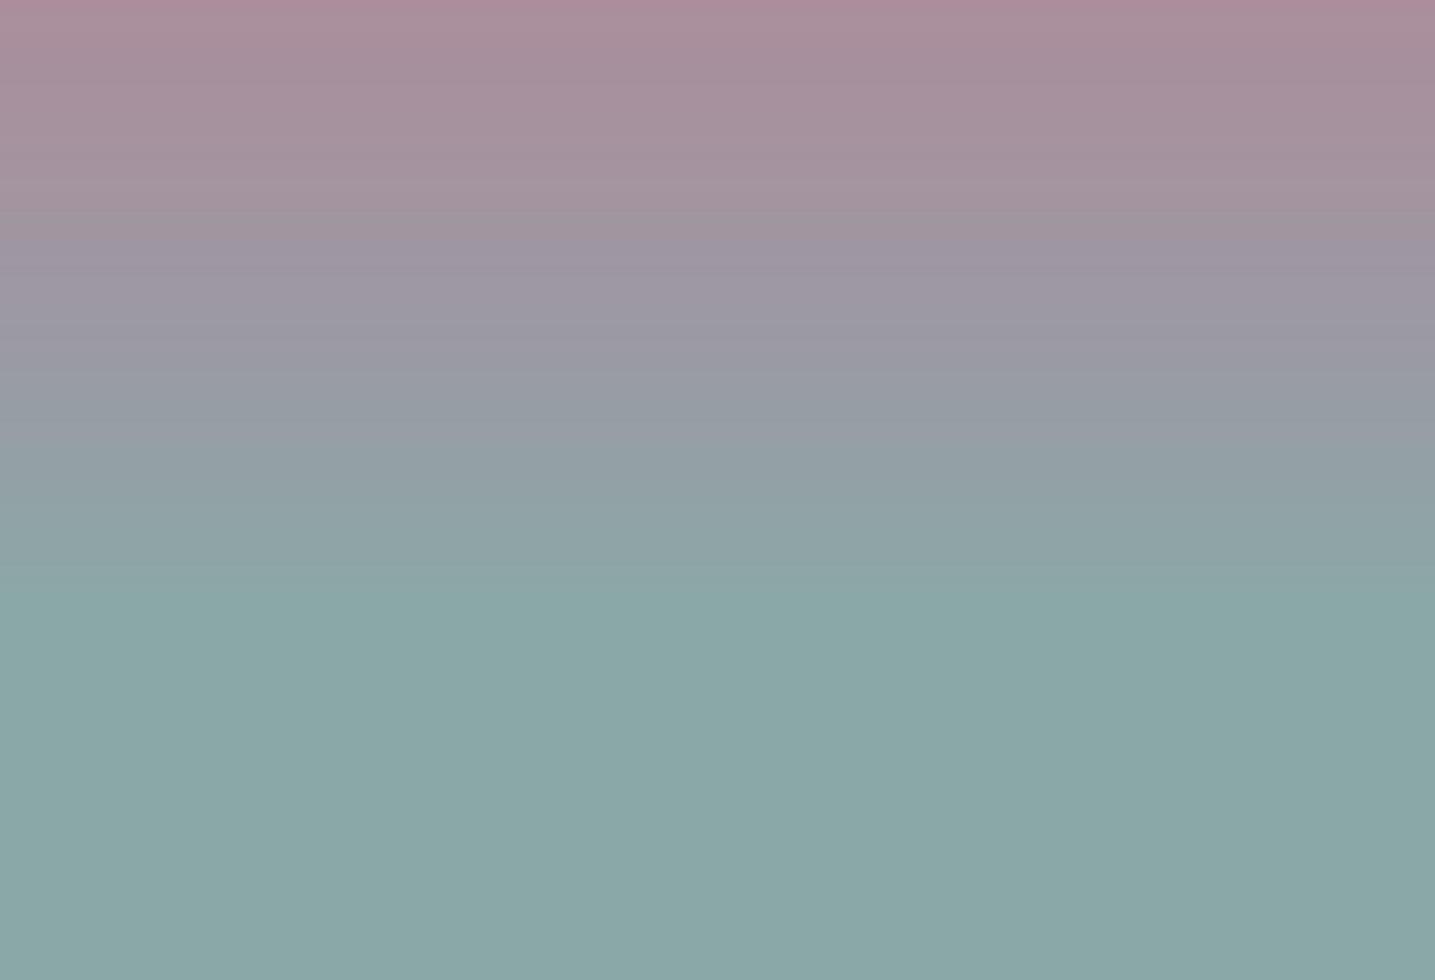 Farbverlauf grau abstrakten Hintergrund. verschwommene glatte graue Farbe, heller Lichteffekt holografisch, silberne grafische weiche Designtapete, Vektorillustration vektor